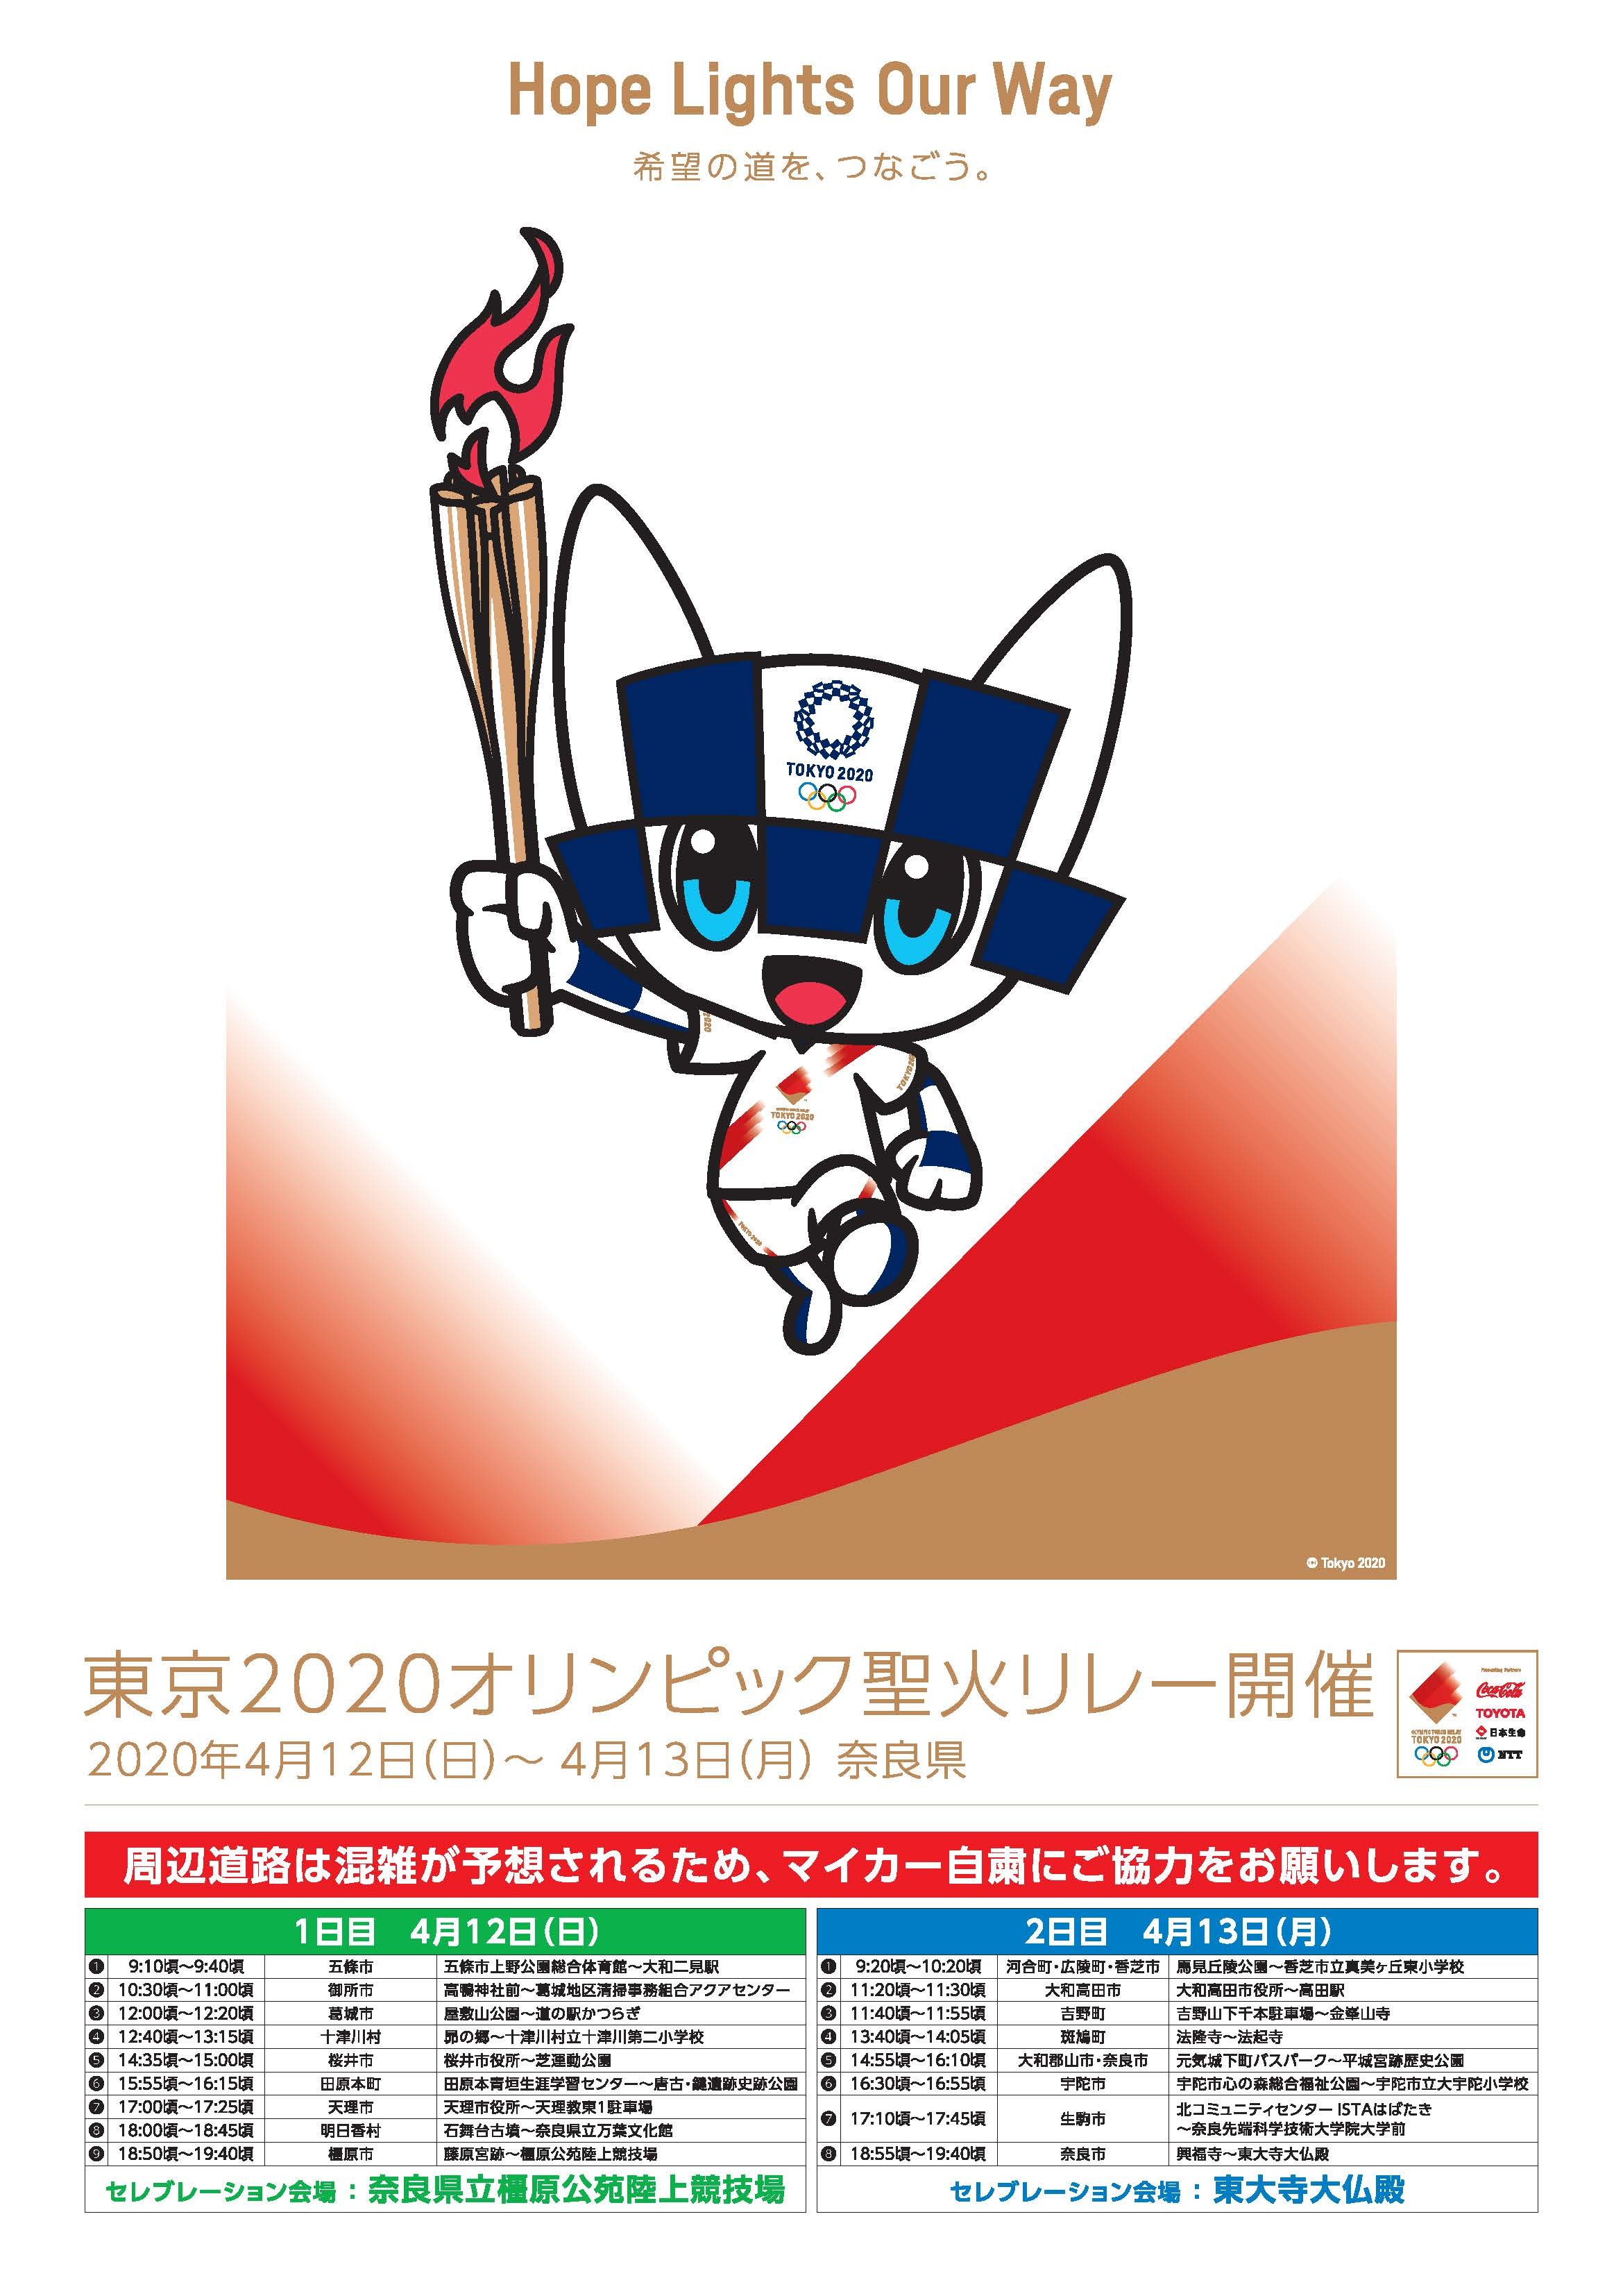 東京2020オリンピック聖火リレー交通規制のお知らせ